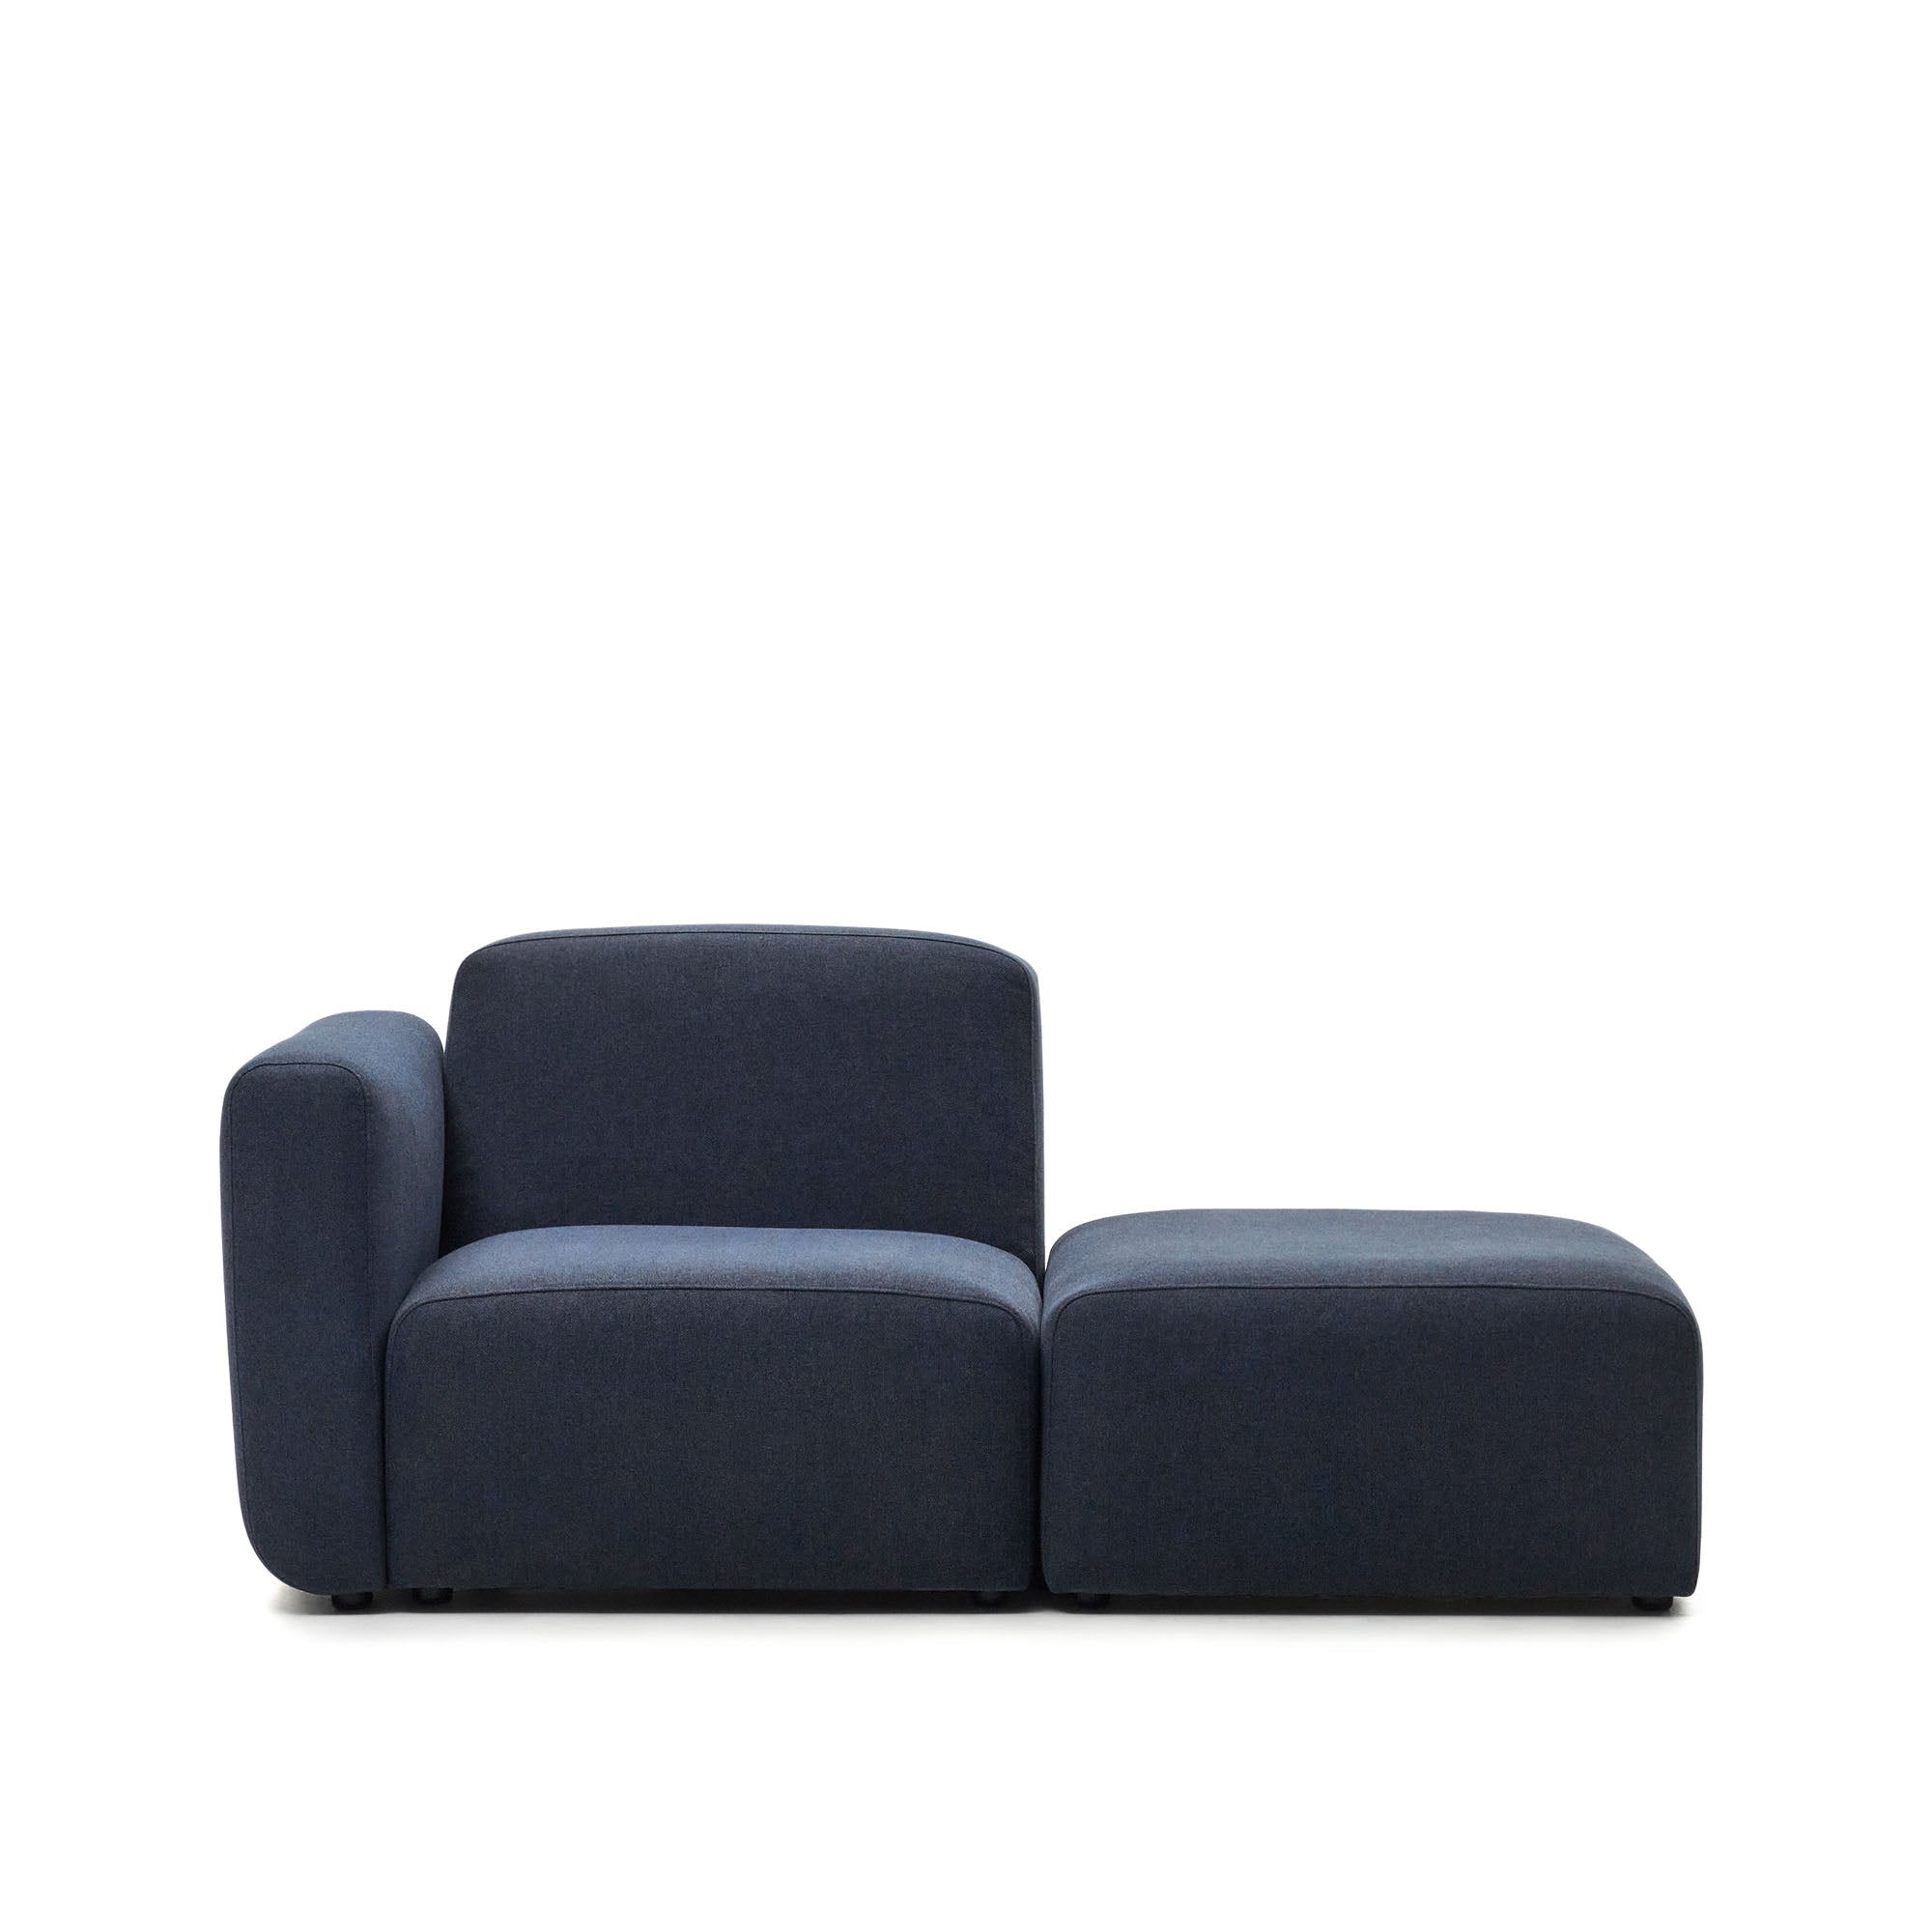 Neom 1 személyes, moduláris kanapé kék színben, 169 cm